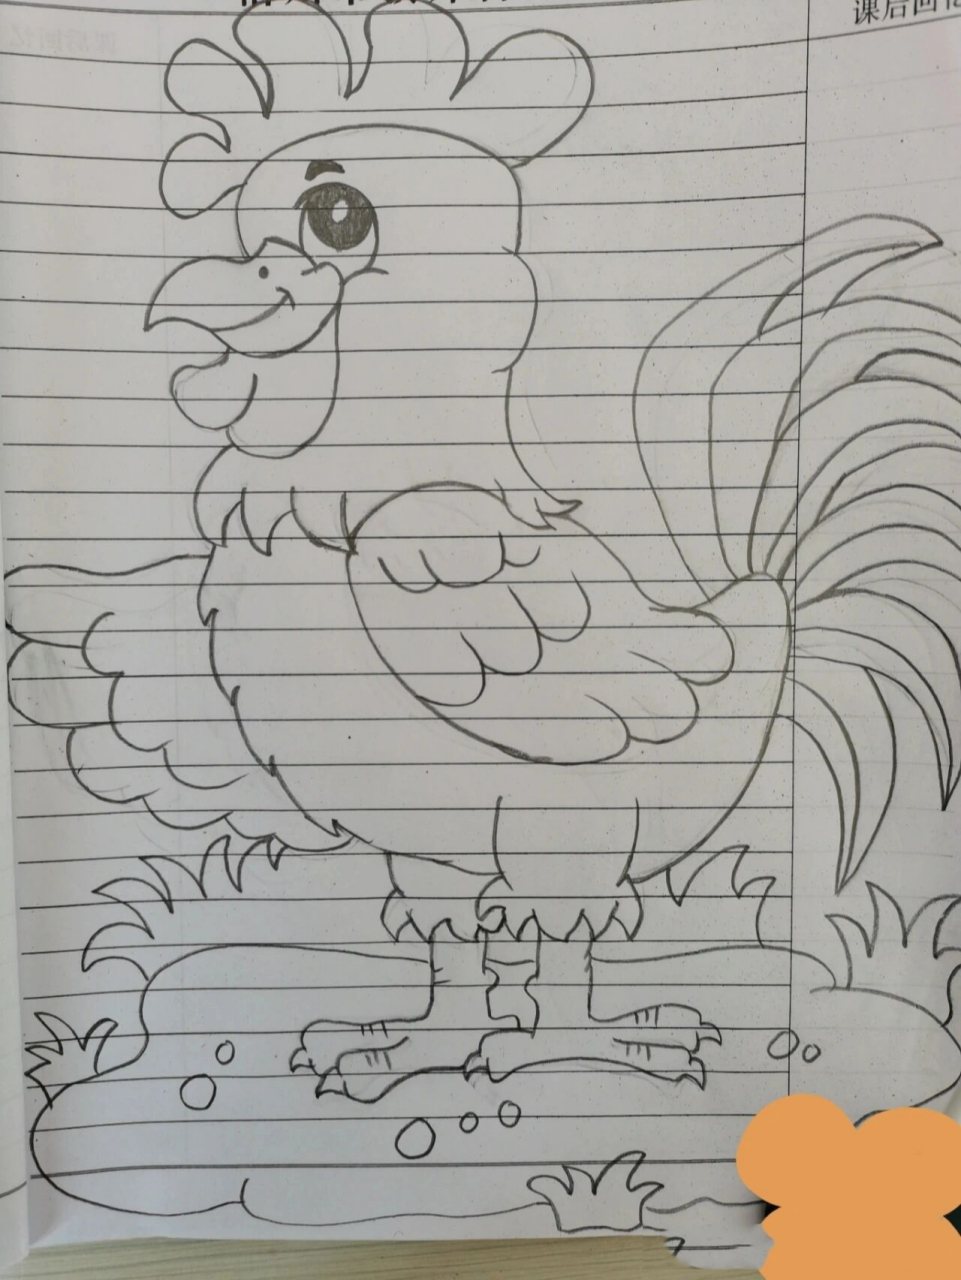 画大公鸡的简笔画图片